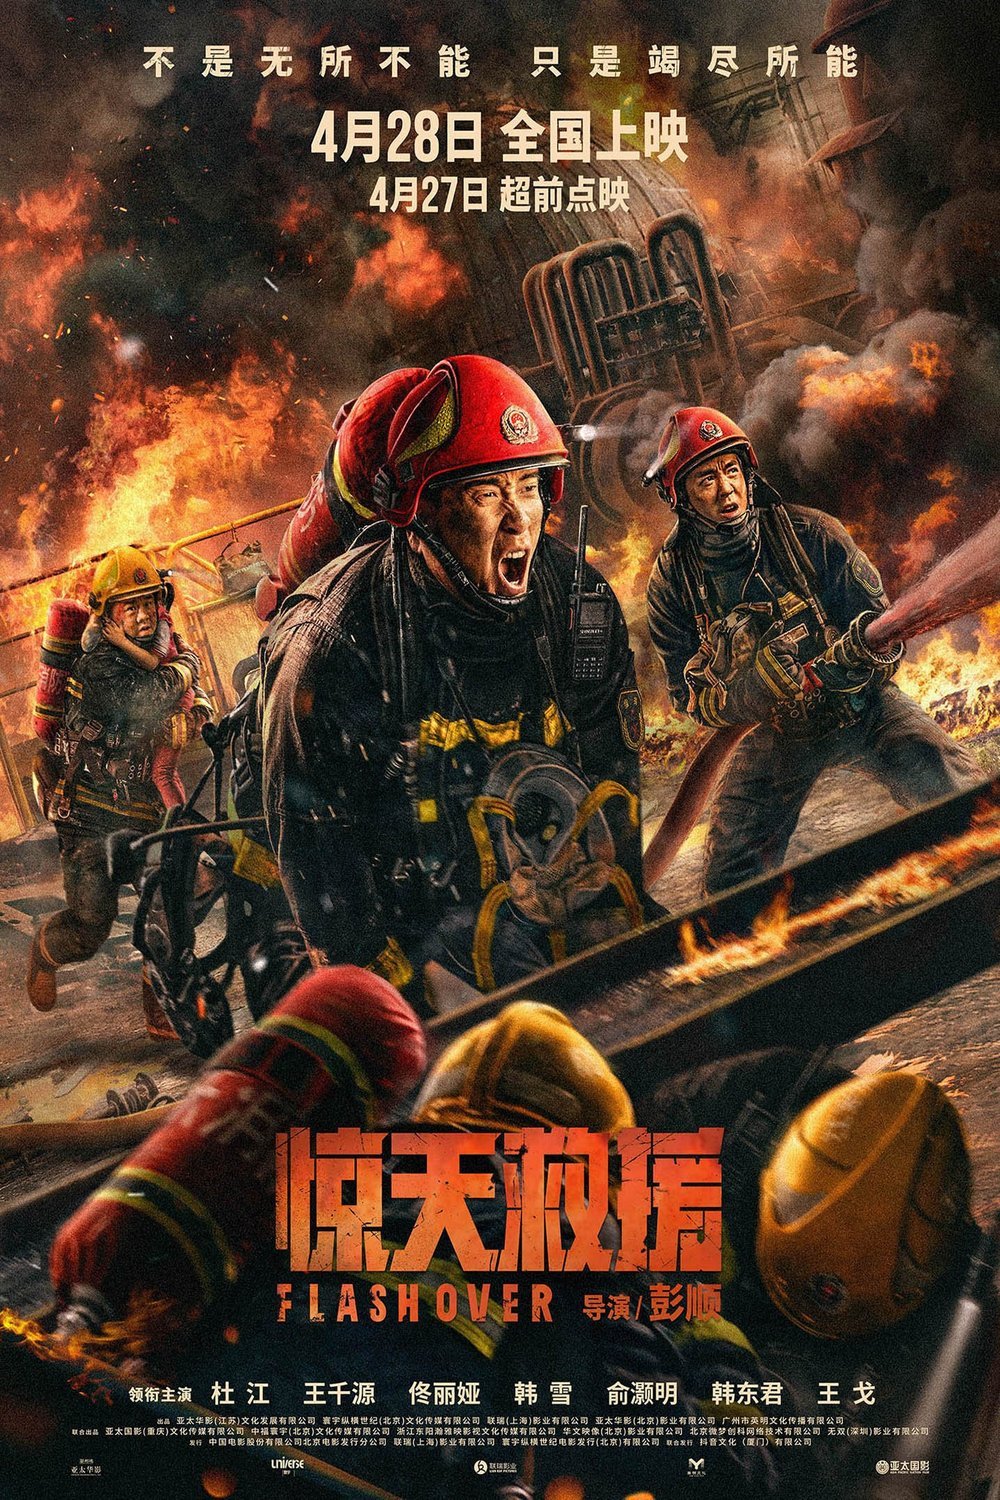 Mandarin poster of the movie Jing tian jiu yuan